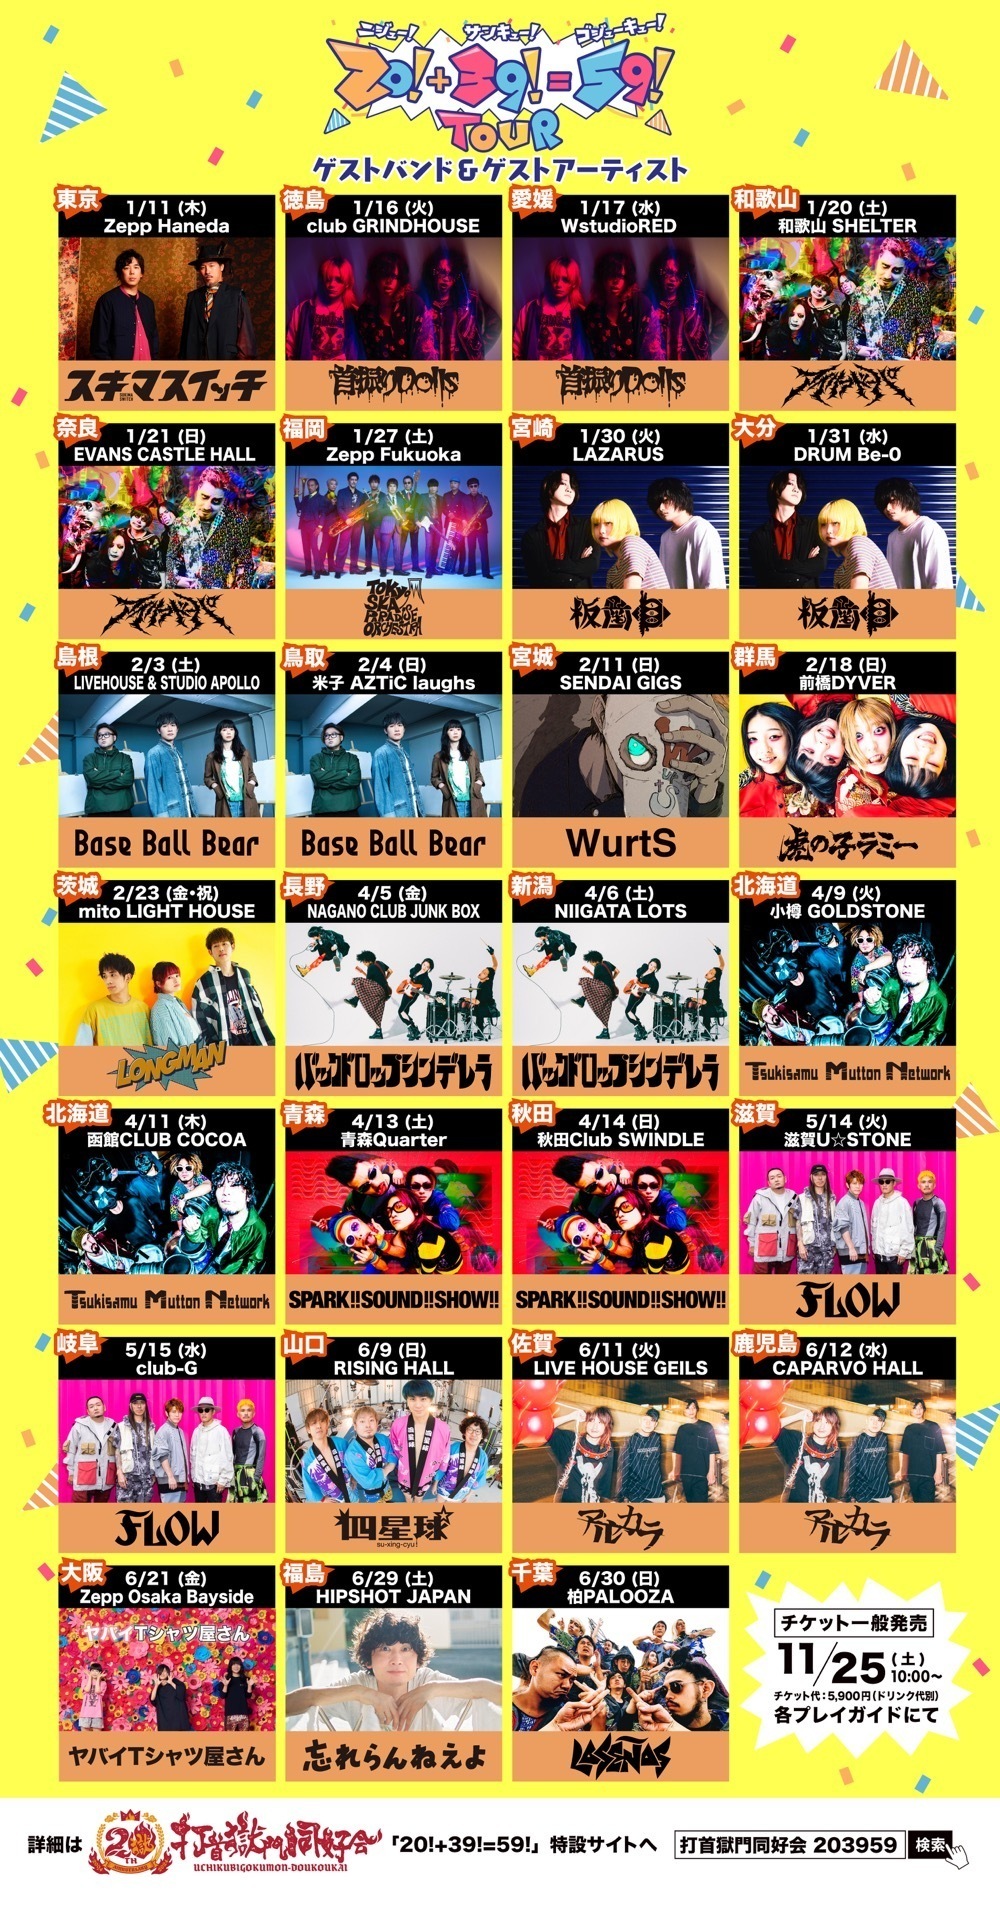 打首獄門同好会 ”20!+39!=59! TOUR” ＠秋田Club SWINDLE | SPARK 